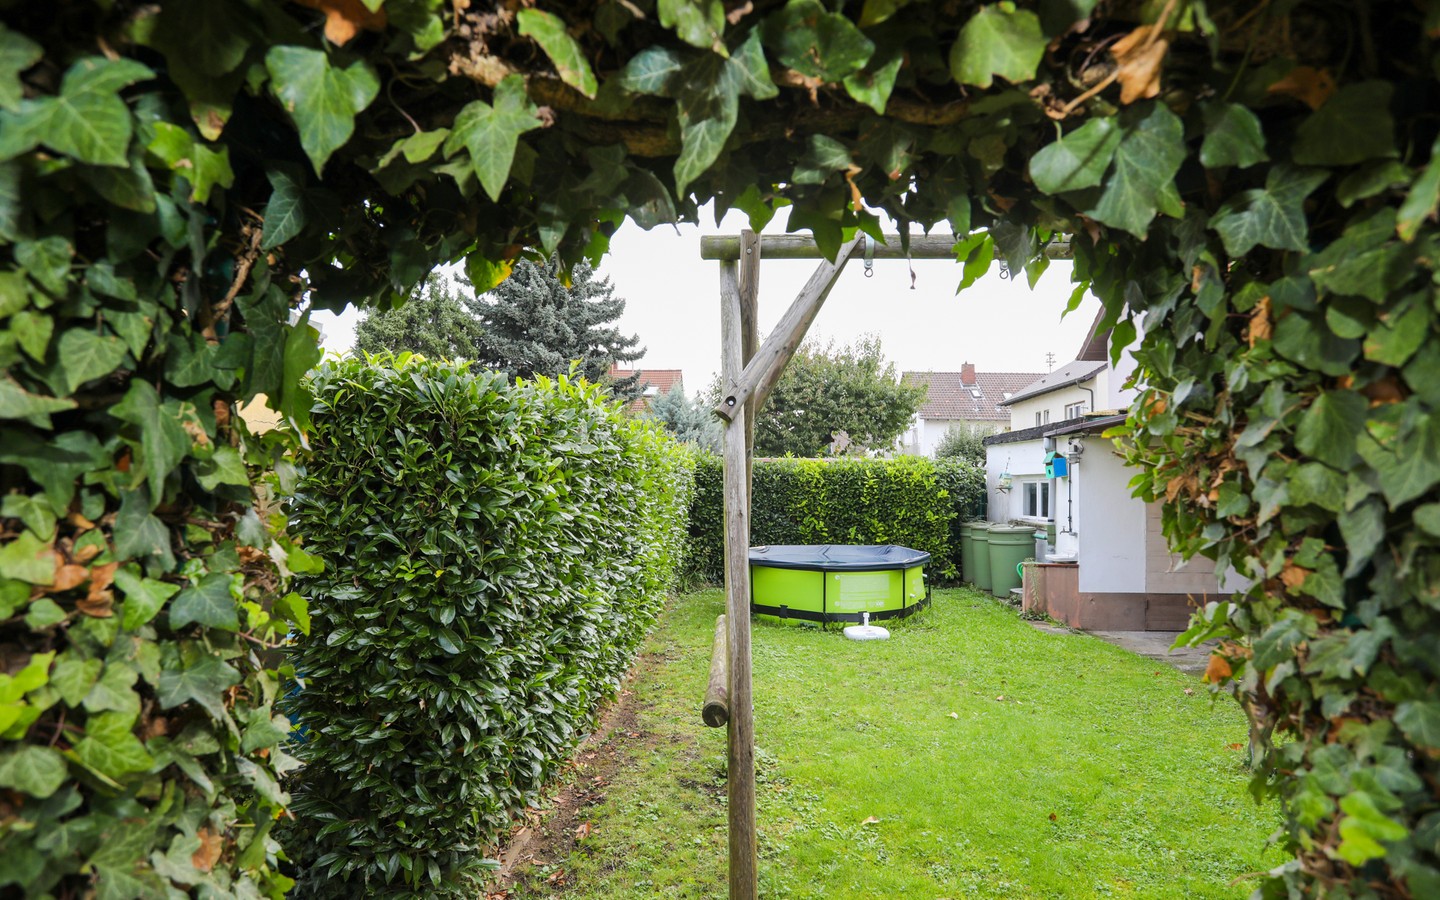 Garten - Eppelheim: MFH auf großem Erbpachtgrundstück in 
familienfreundlicher Wohnlage zur flexiblen Nutzung